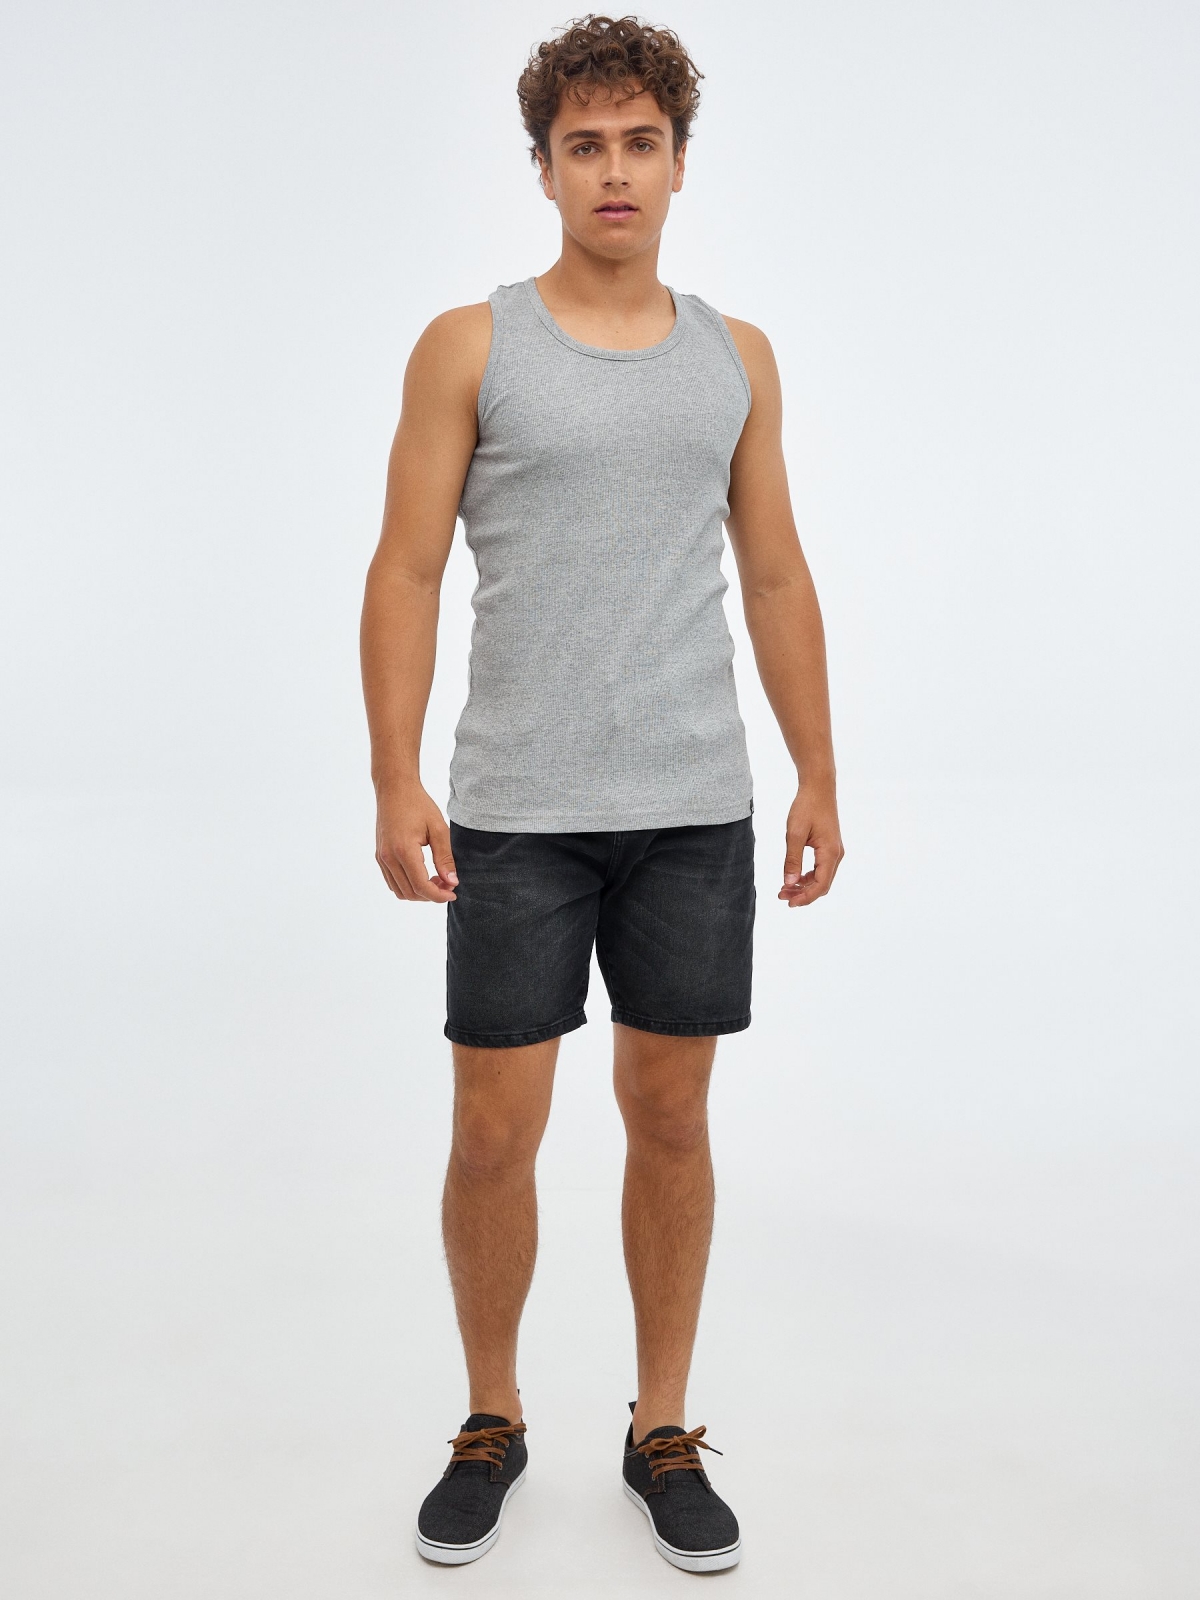 Camiseta básica espalda nadadora gris vista general frontal